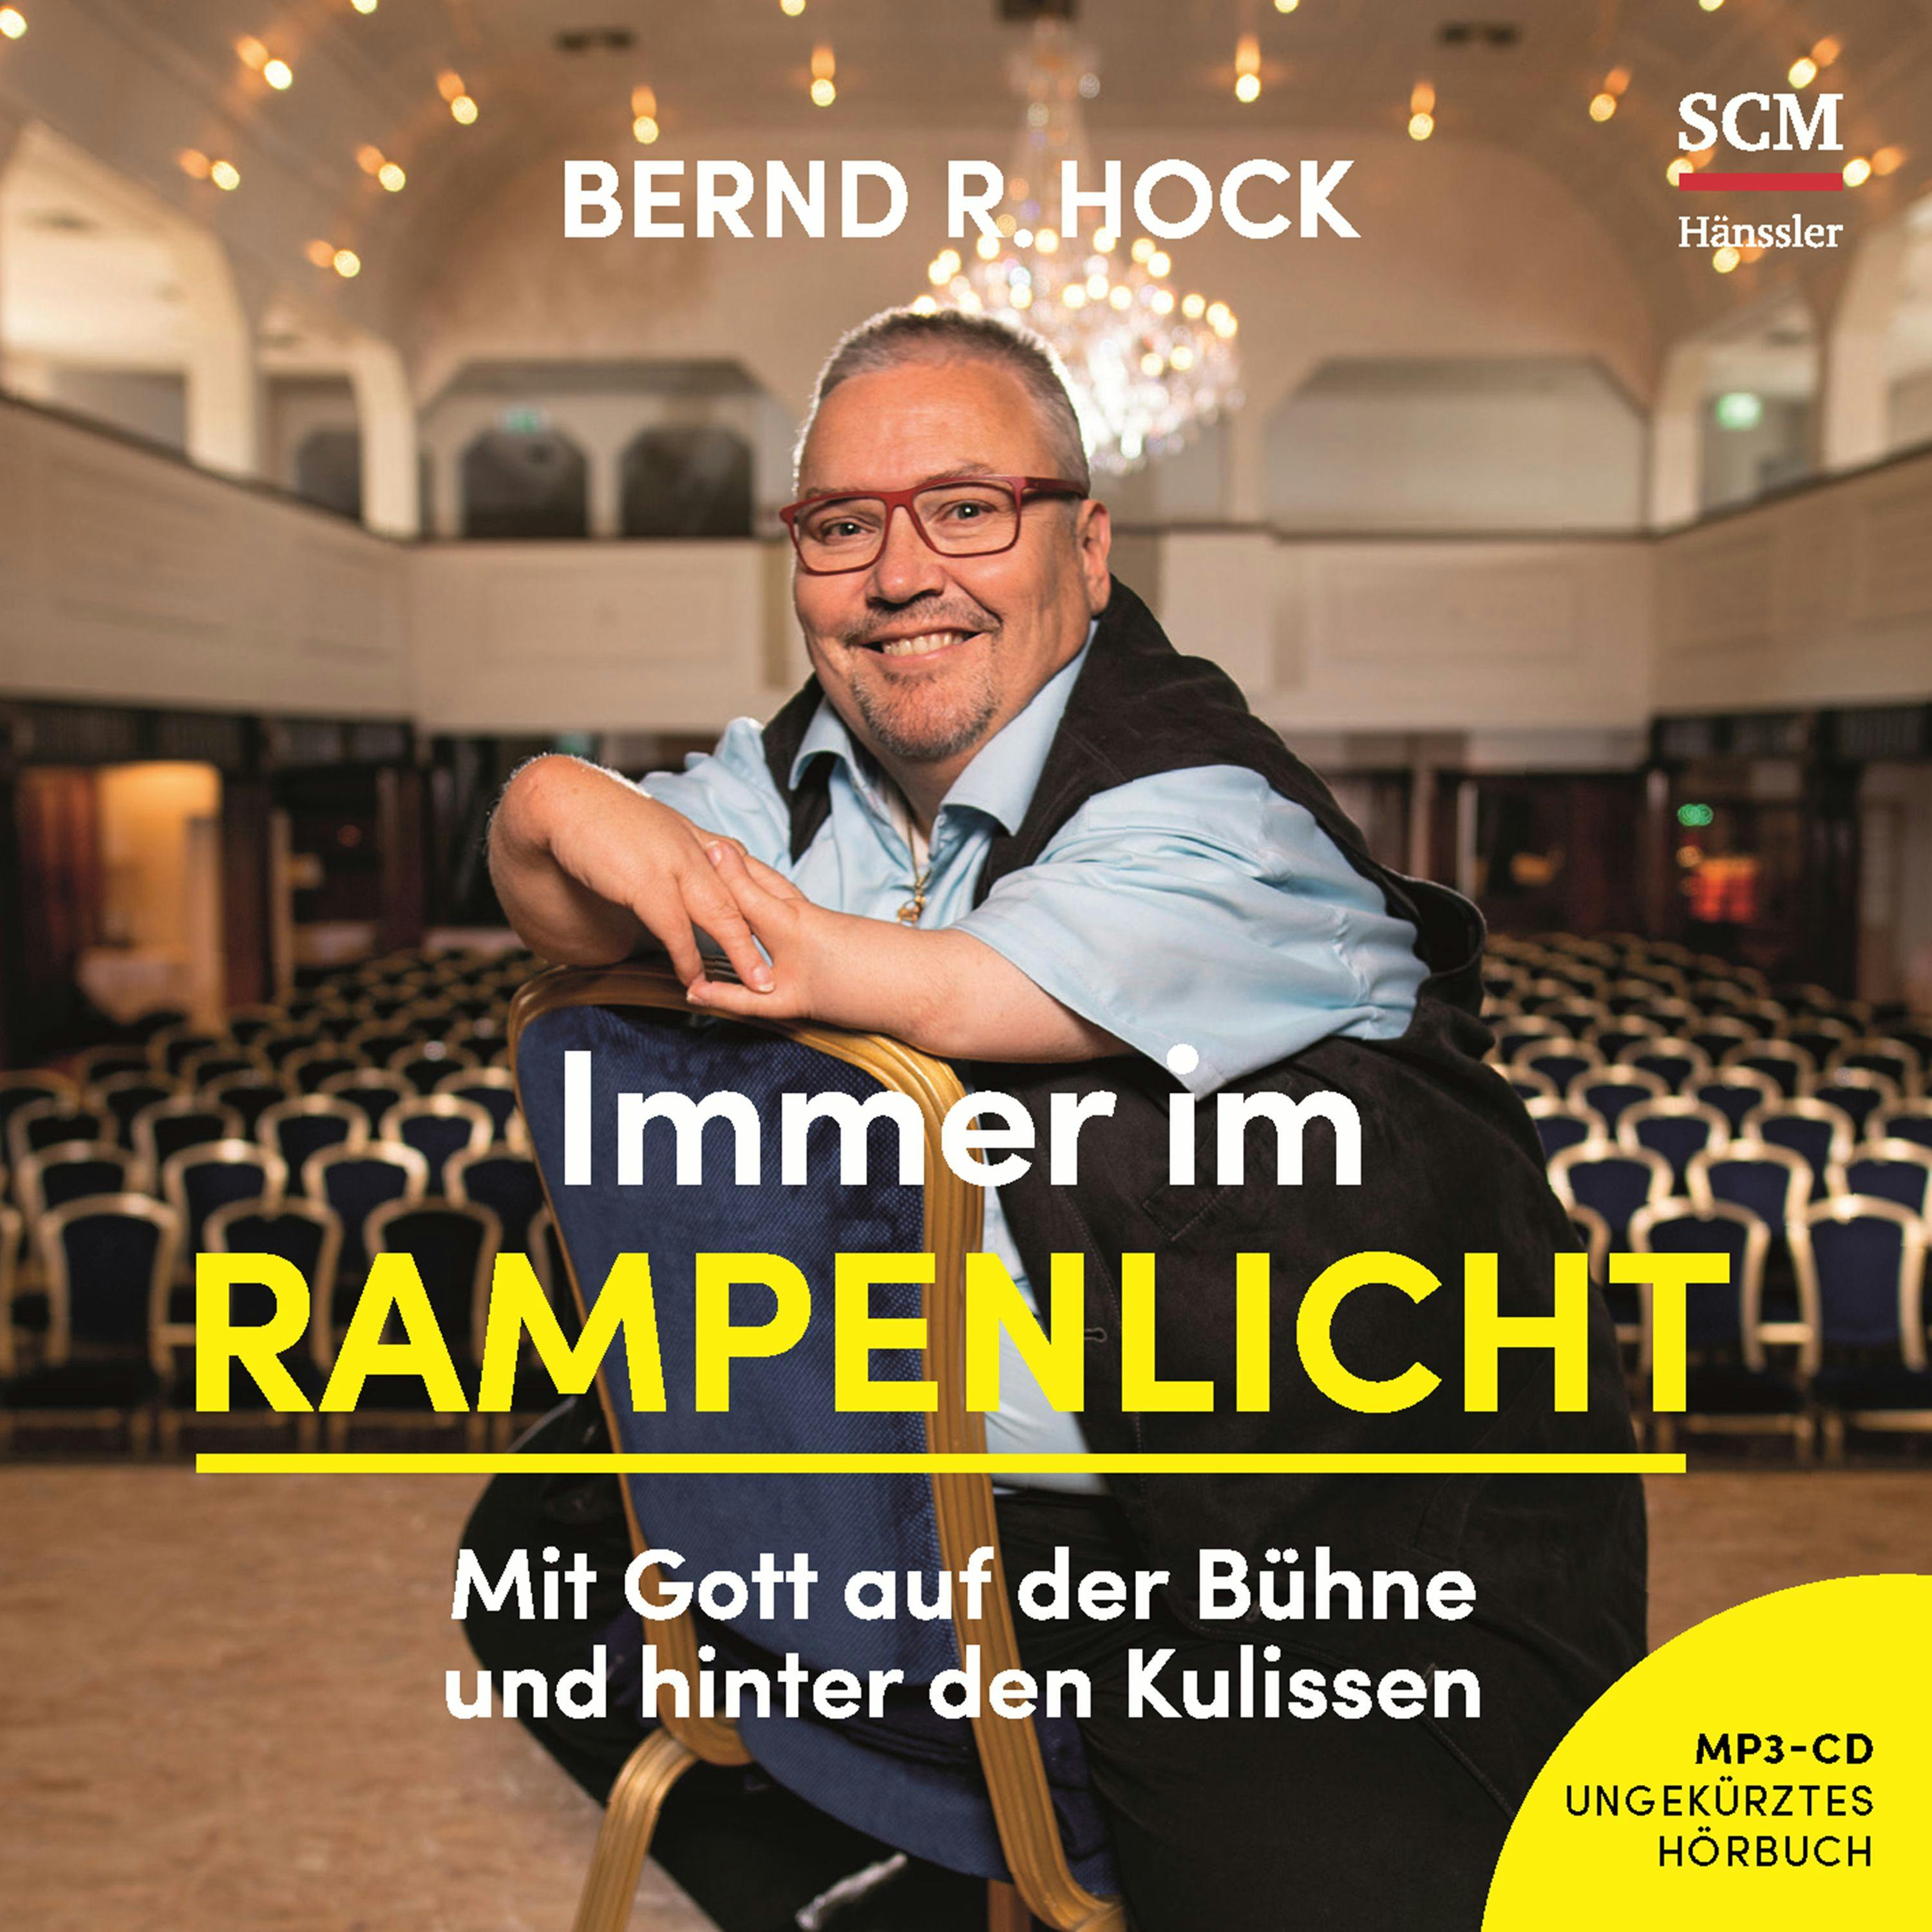 Immer im Rampenlicht: Mit Gott auf der Bühne und hinter den Kulissen - Bernd R. Hock